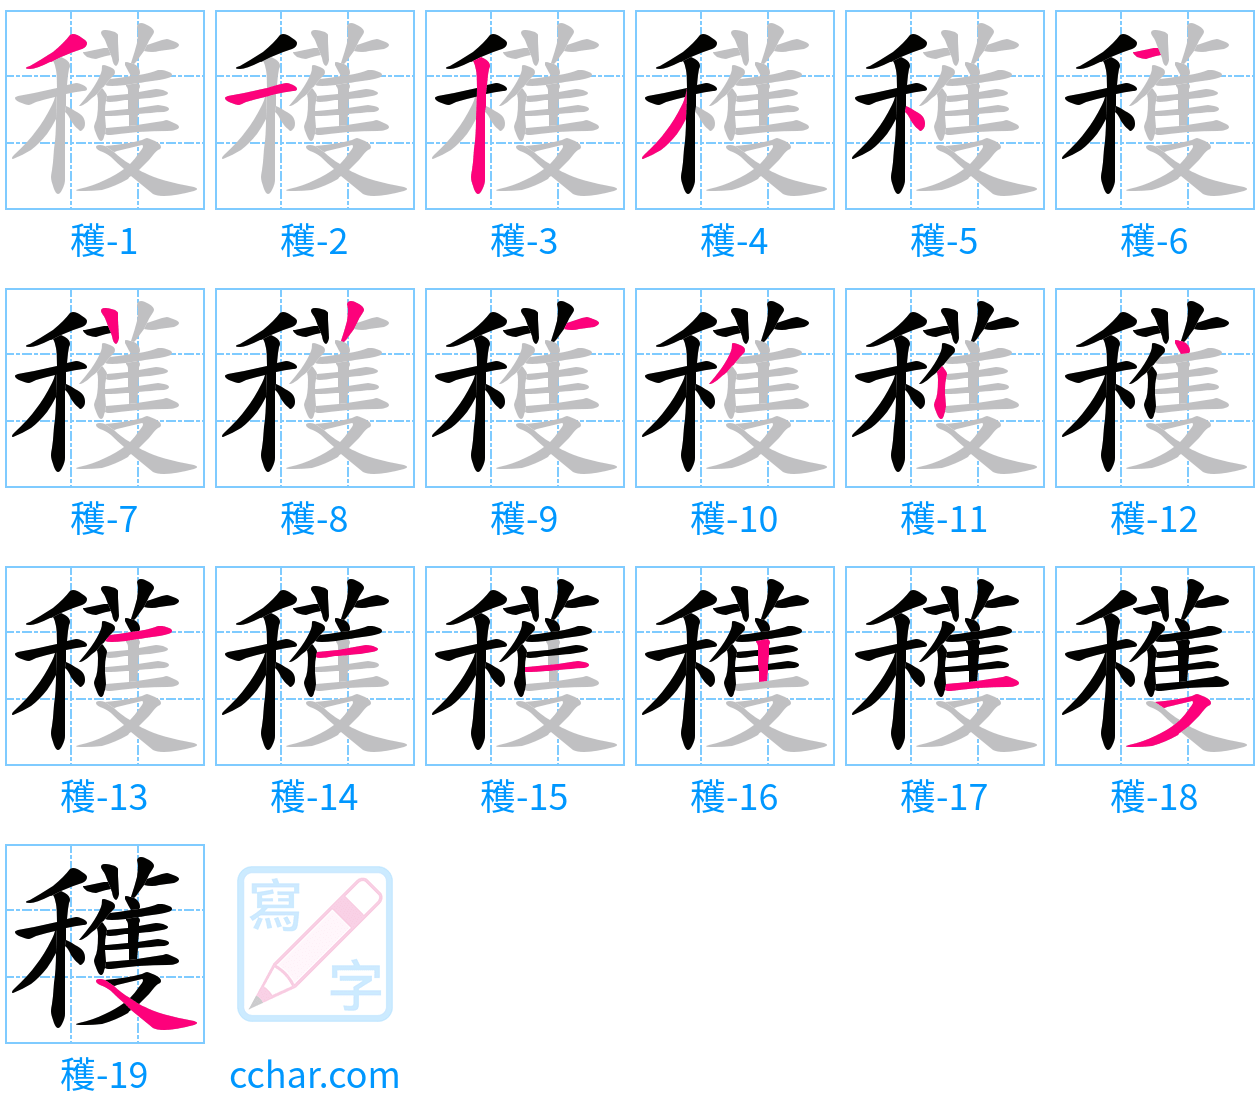 穫 stroke order step-by-step diagram